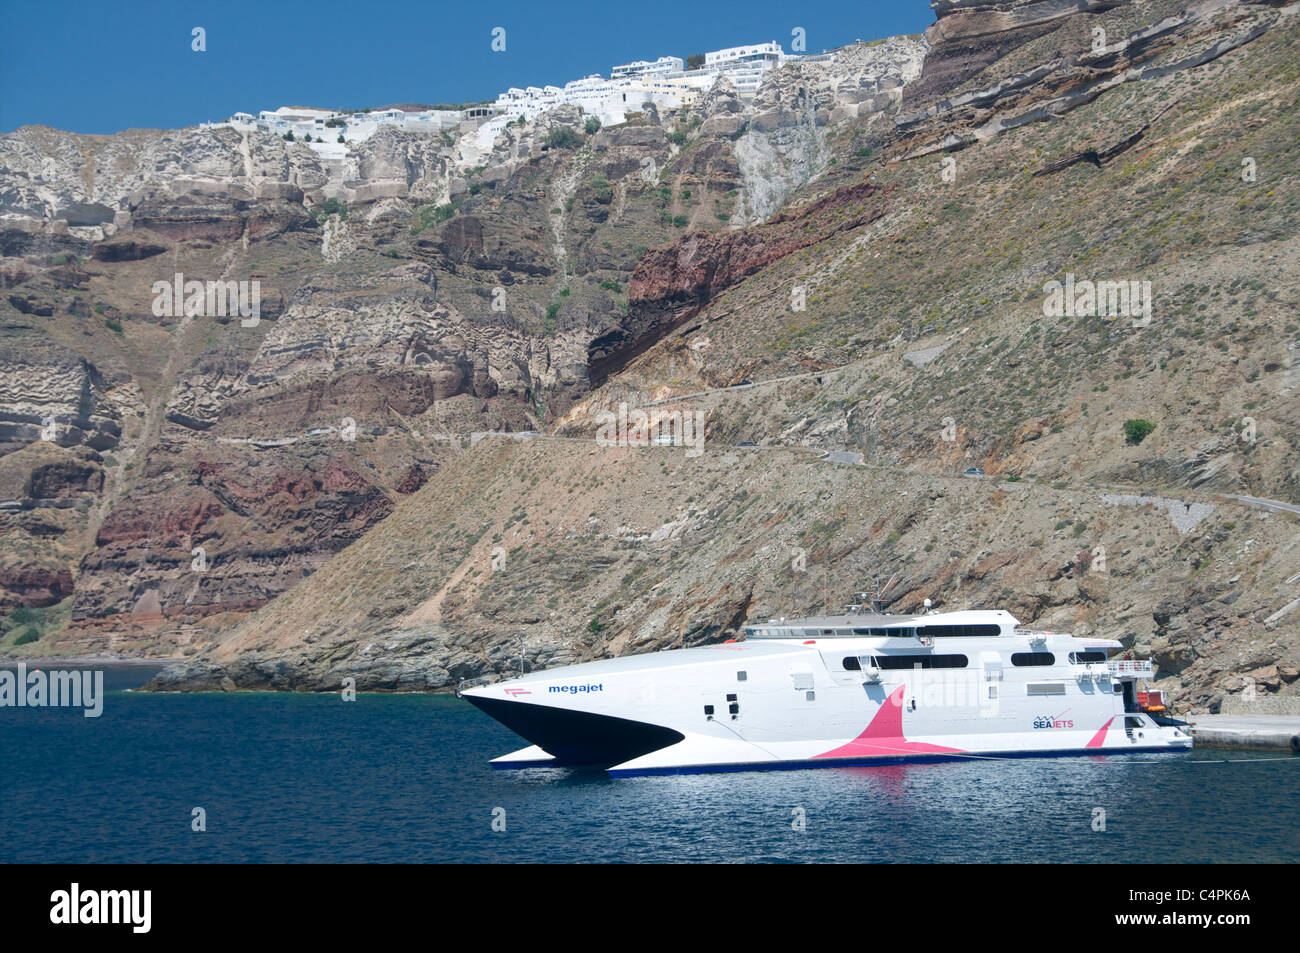 Futuristische Megajet Fähre im Hafen von Santorini, Kykladen, Griechenland angedockt Stockfoto